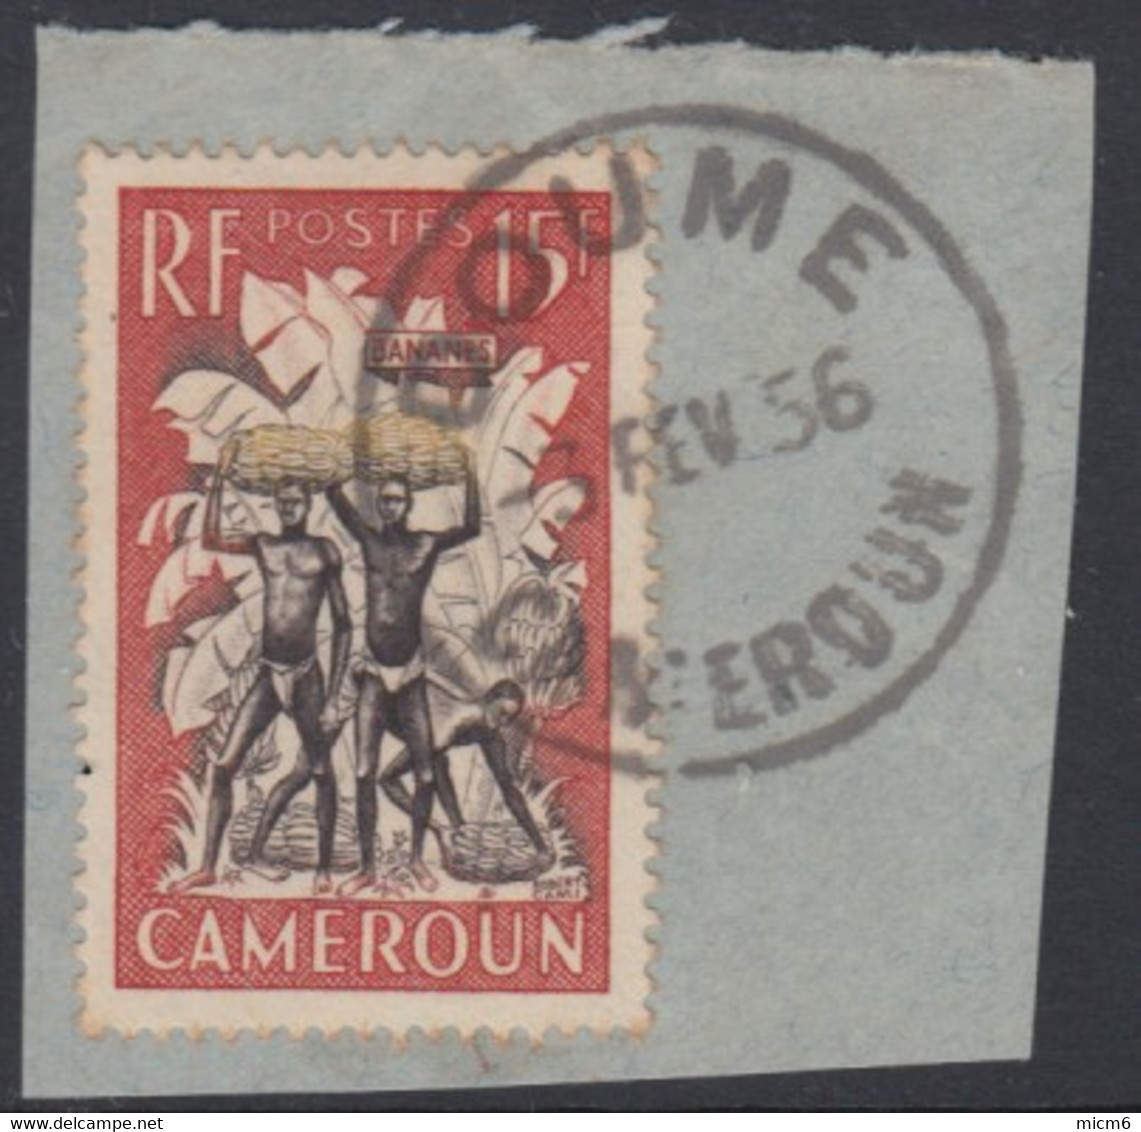 Cameroun Mandat Français - Doume Sur N° 298 (YT) N° 261 (AM). Oblitération. - Oblitérés